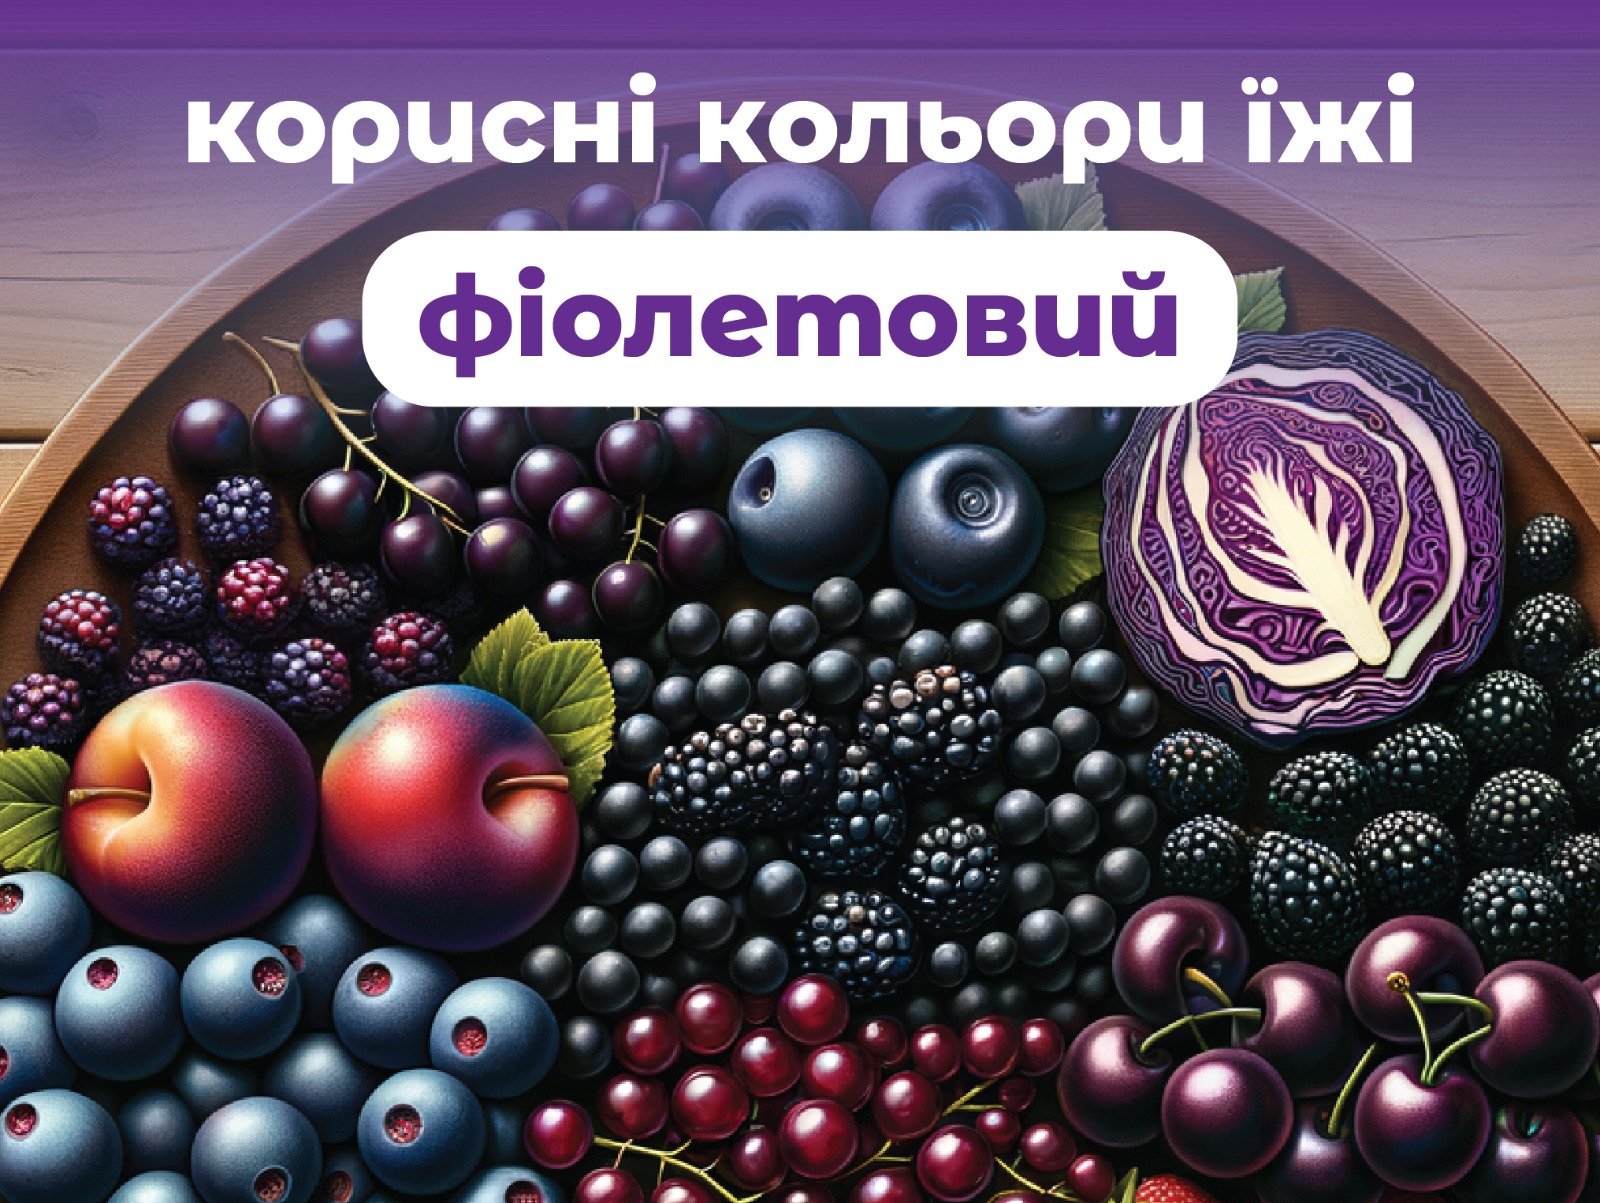 На зображенні ягоди і фрукти у верхній частині напис: фіолетовий-корисні кольори їжі